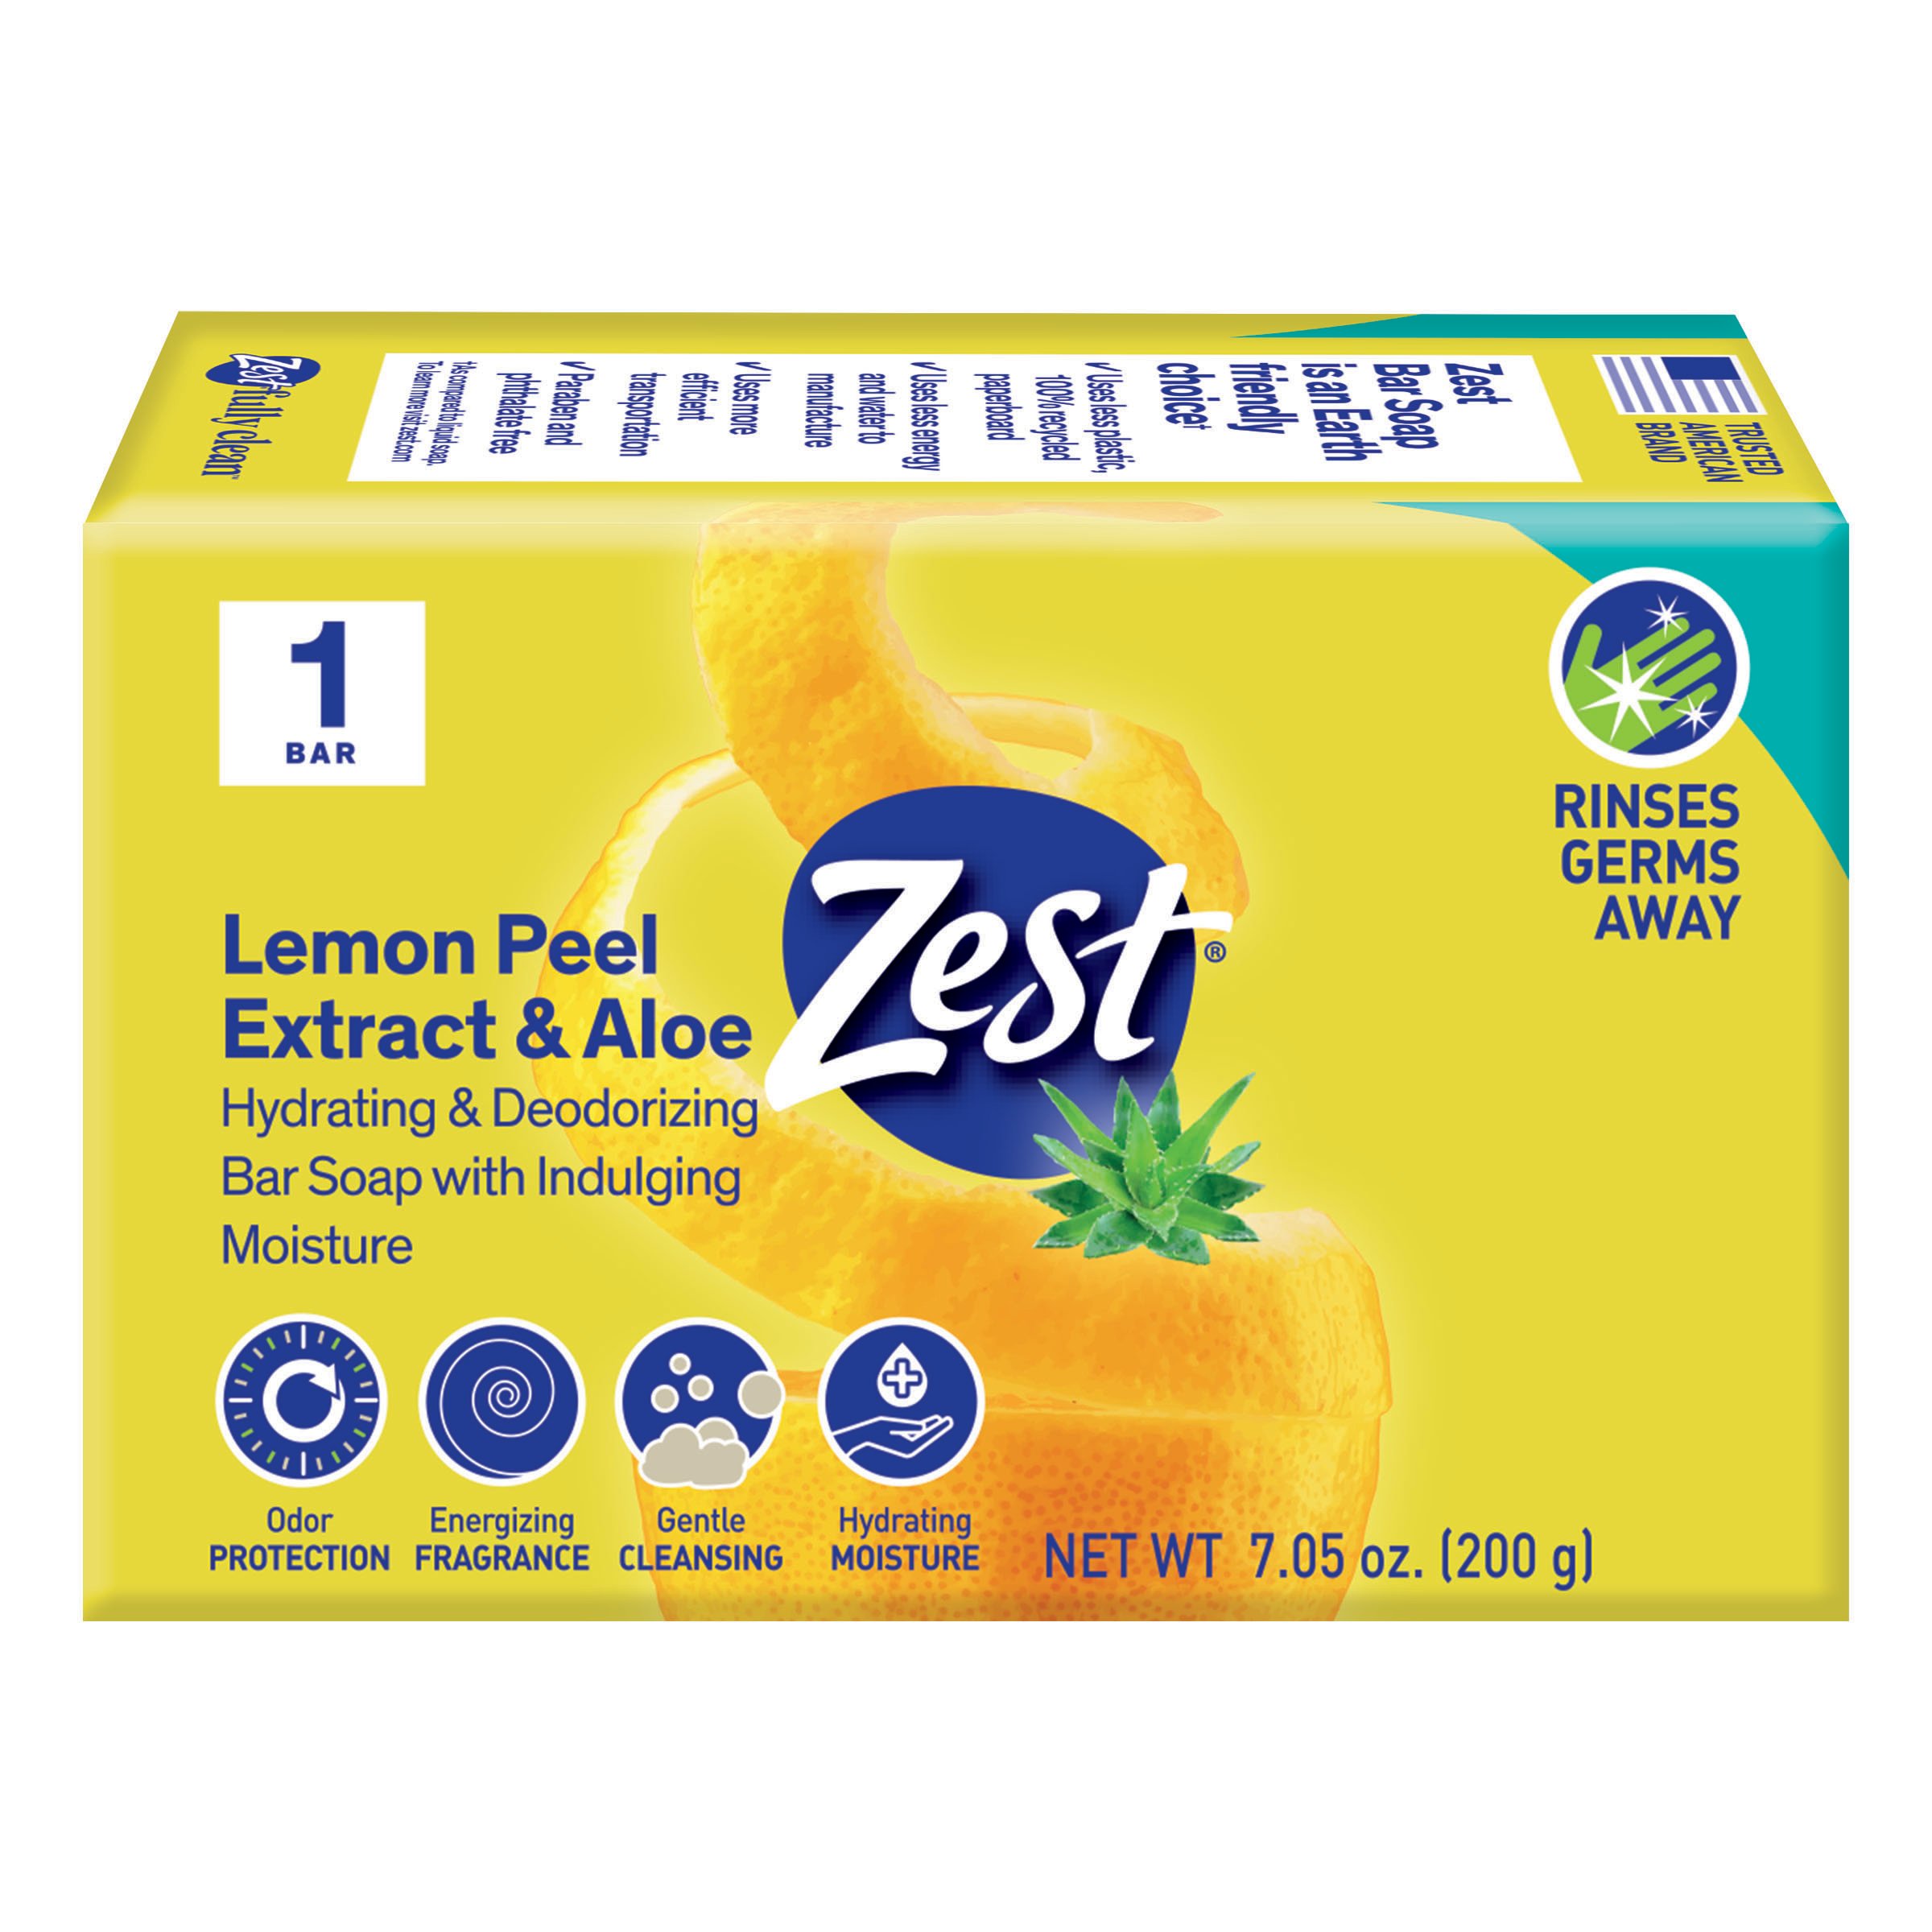 Zest Bar Soap - Lemon Peel Extract & Aloe - Shop Hand & Bar Soap at H-E-B